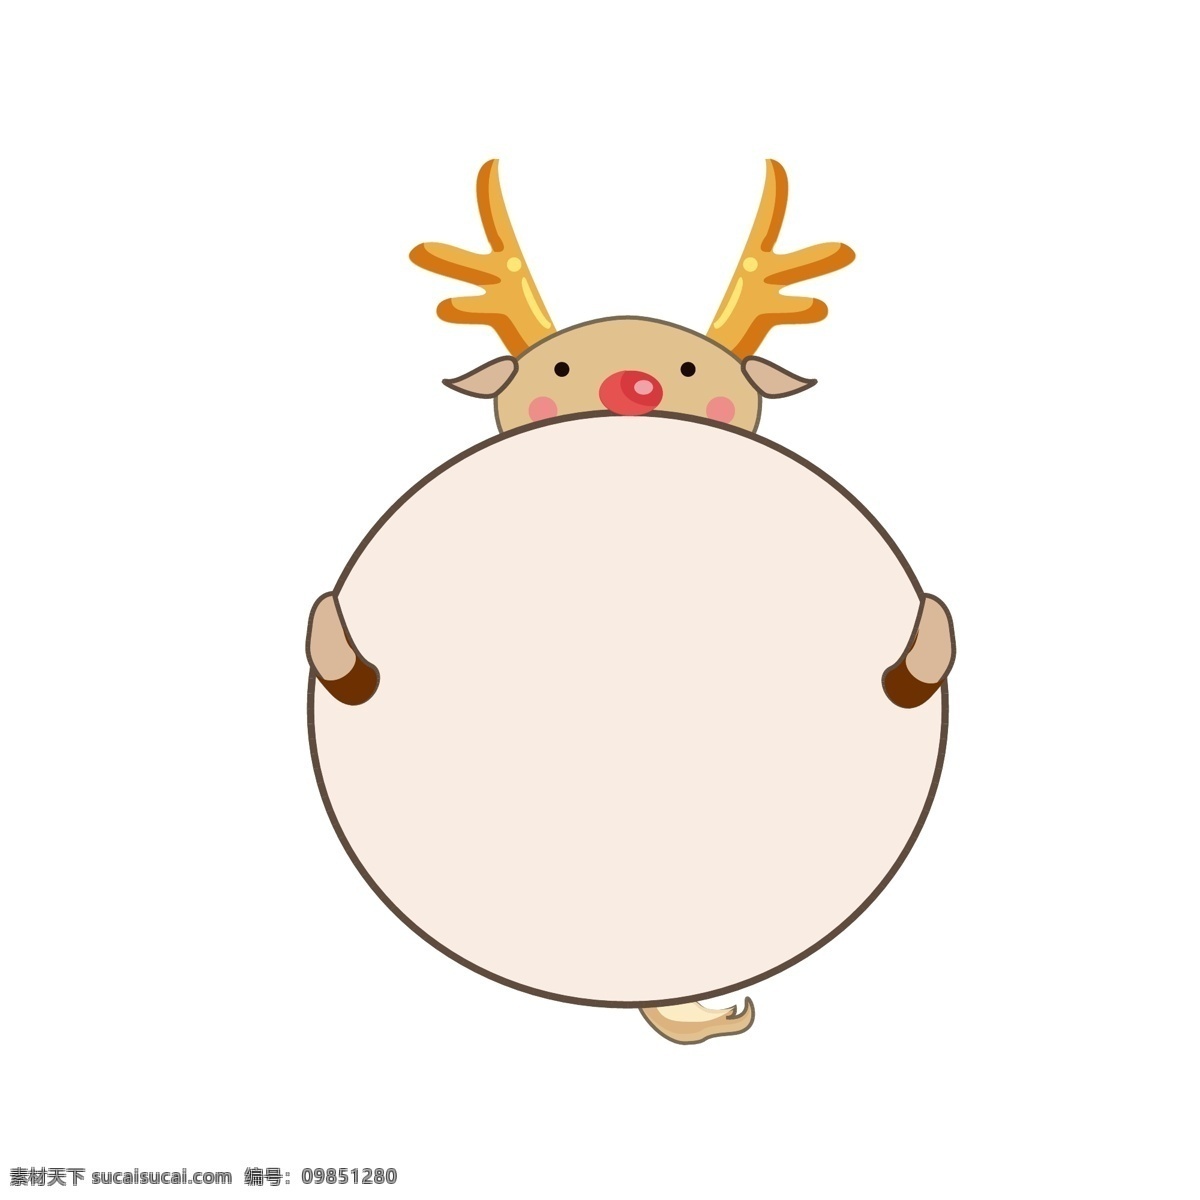 动物 卡通 边框 麋鹿 可爱 气泡 对话框 手 账 商用 圣诞节 温暖 鹿 鹿角 卡通图框 纹理边框 卡通元素 图框元素 气泡框 菜单 语音框